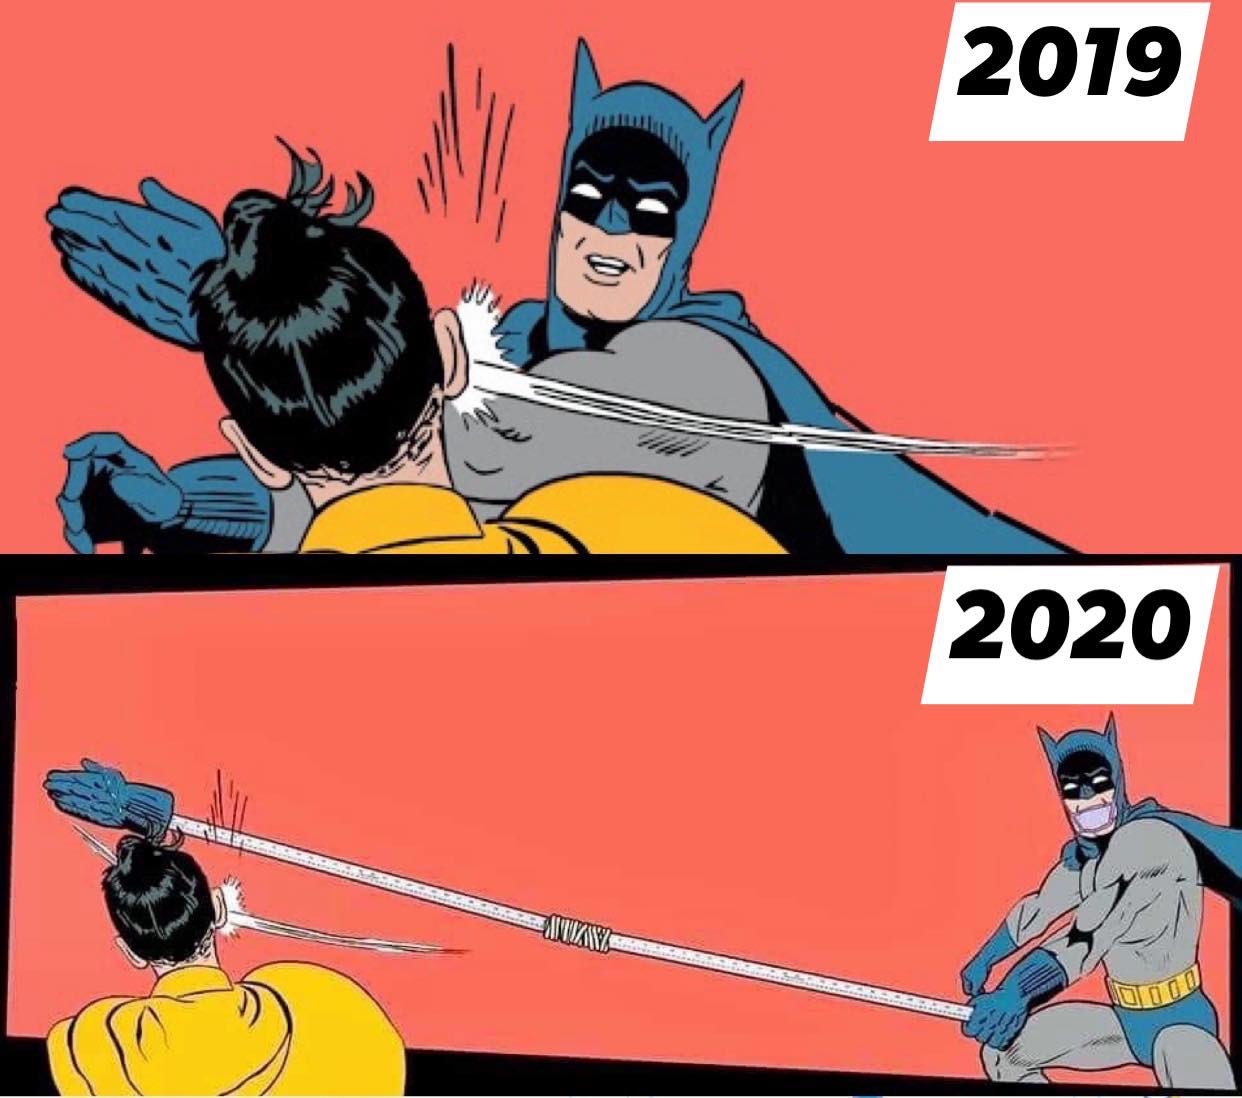 La gifle de Batman en 2019 vs 2020